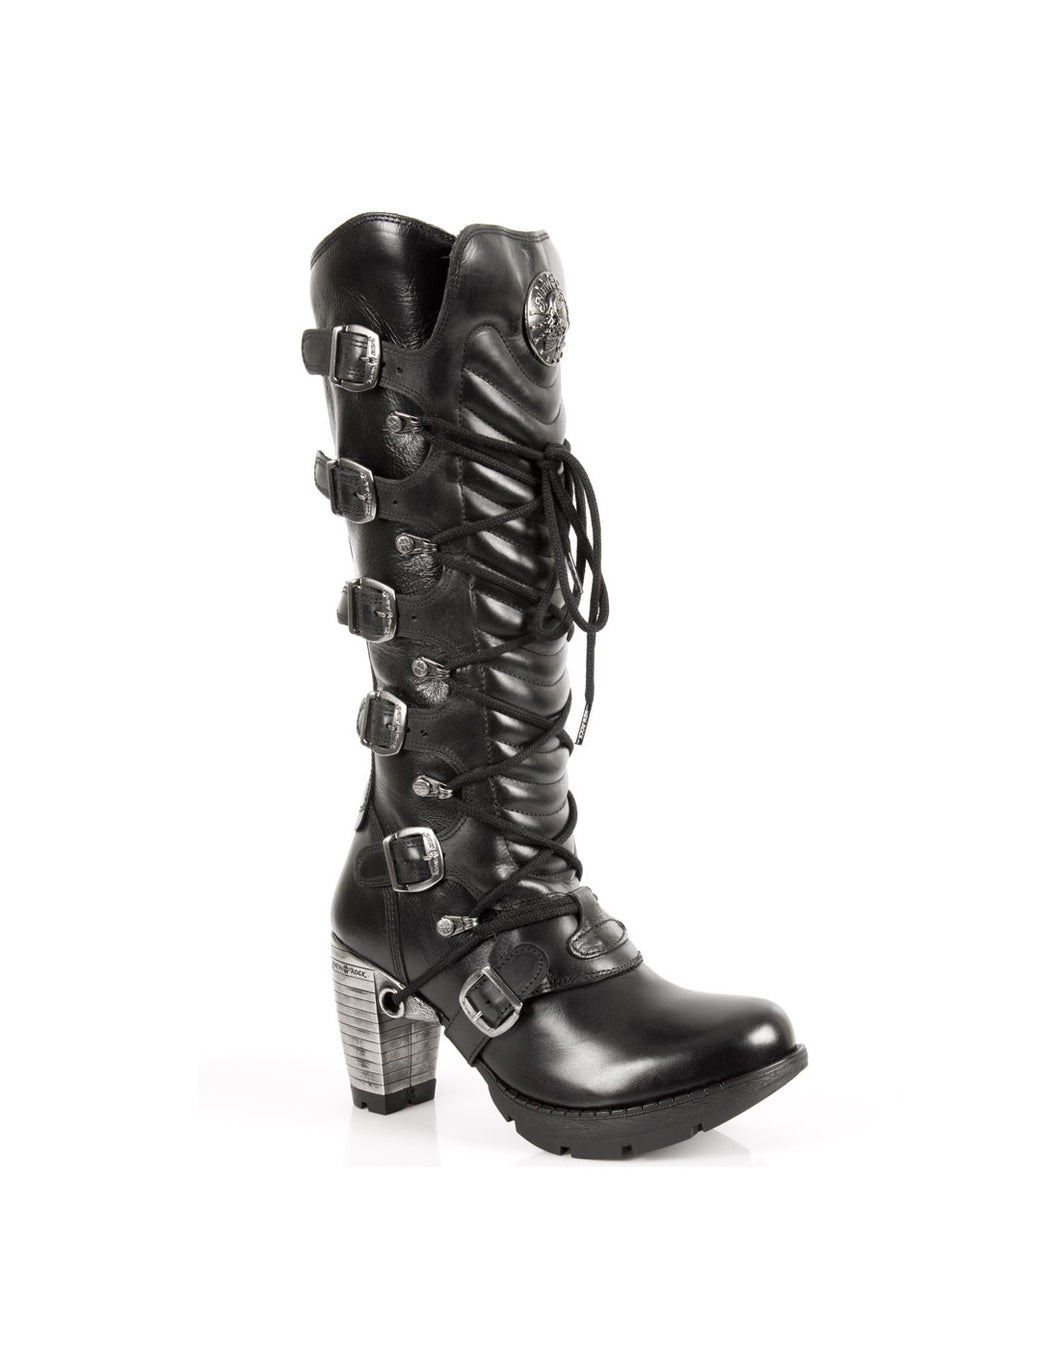 New Rock Schuhe Damen- Stiefel Boots Schuhe Gothic M.TR004-S1 Schnallen